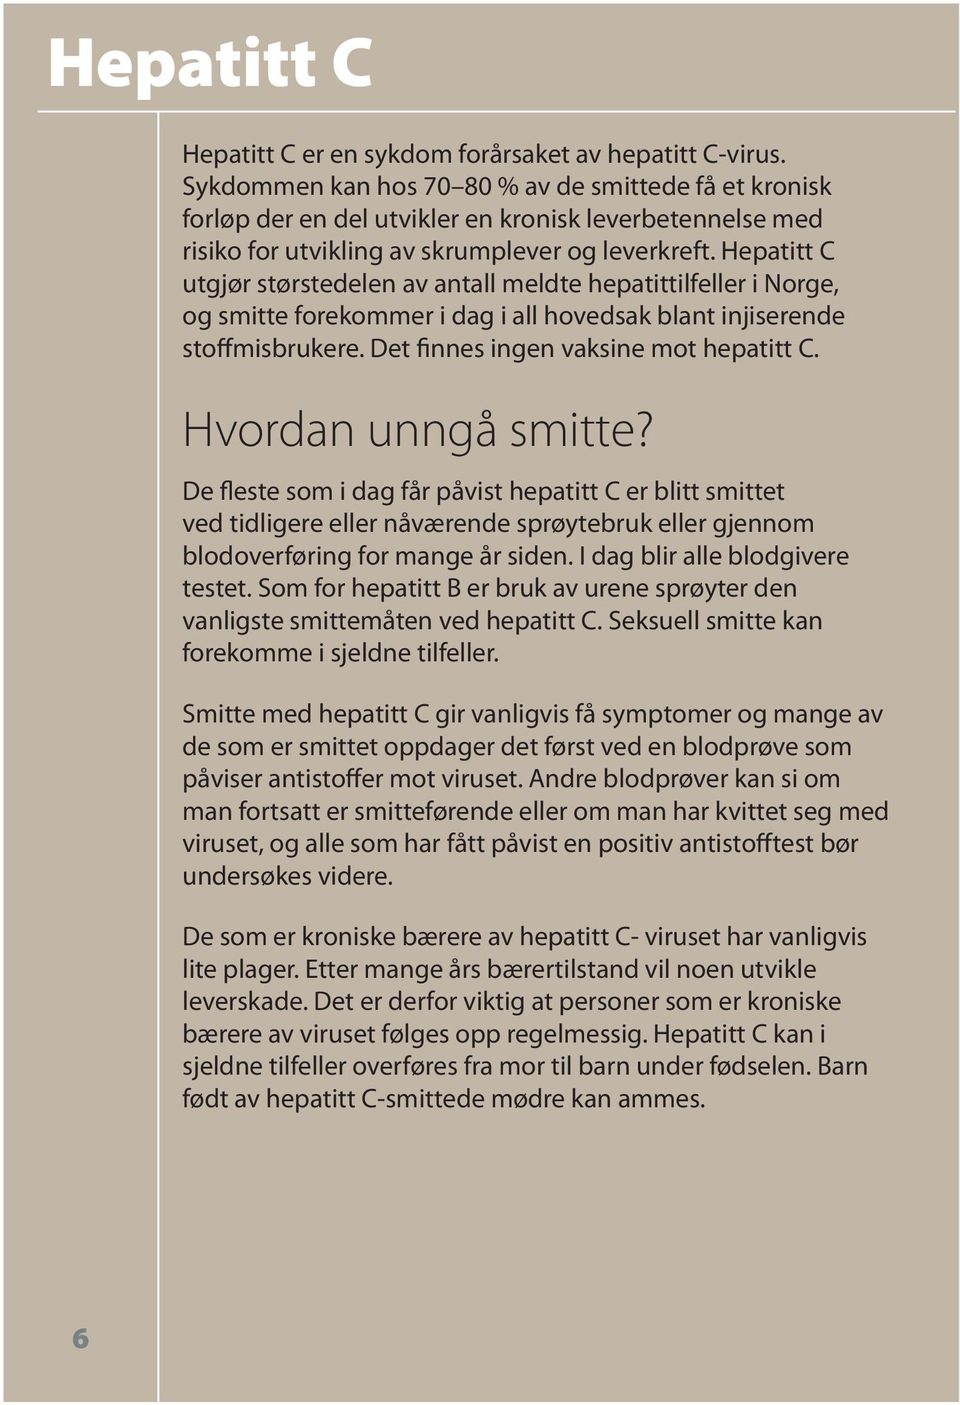 Hepatitt C utgjør størstedelen av antall meldte hepatittilfeller i Norge, og smitte forekommer i dag i all hovedsak blant injiserende stoffmisbrukere. Det finnes ingen vaksine mot hepatitt C.